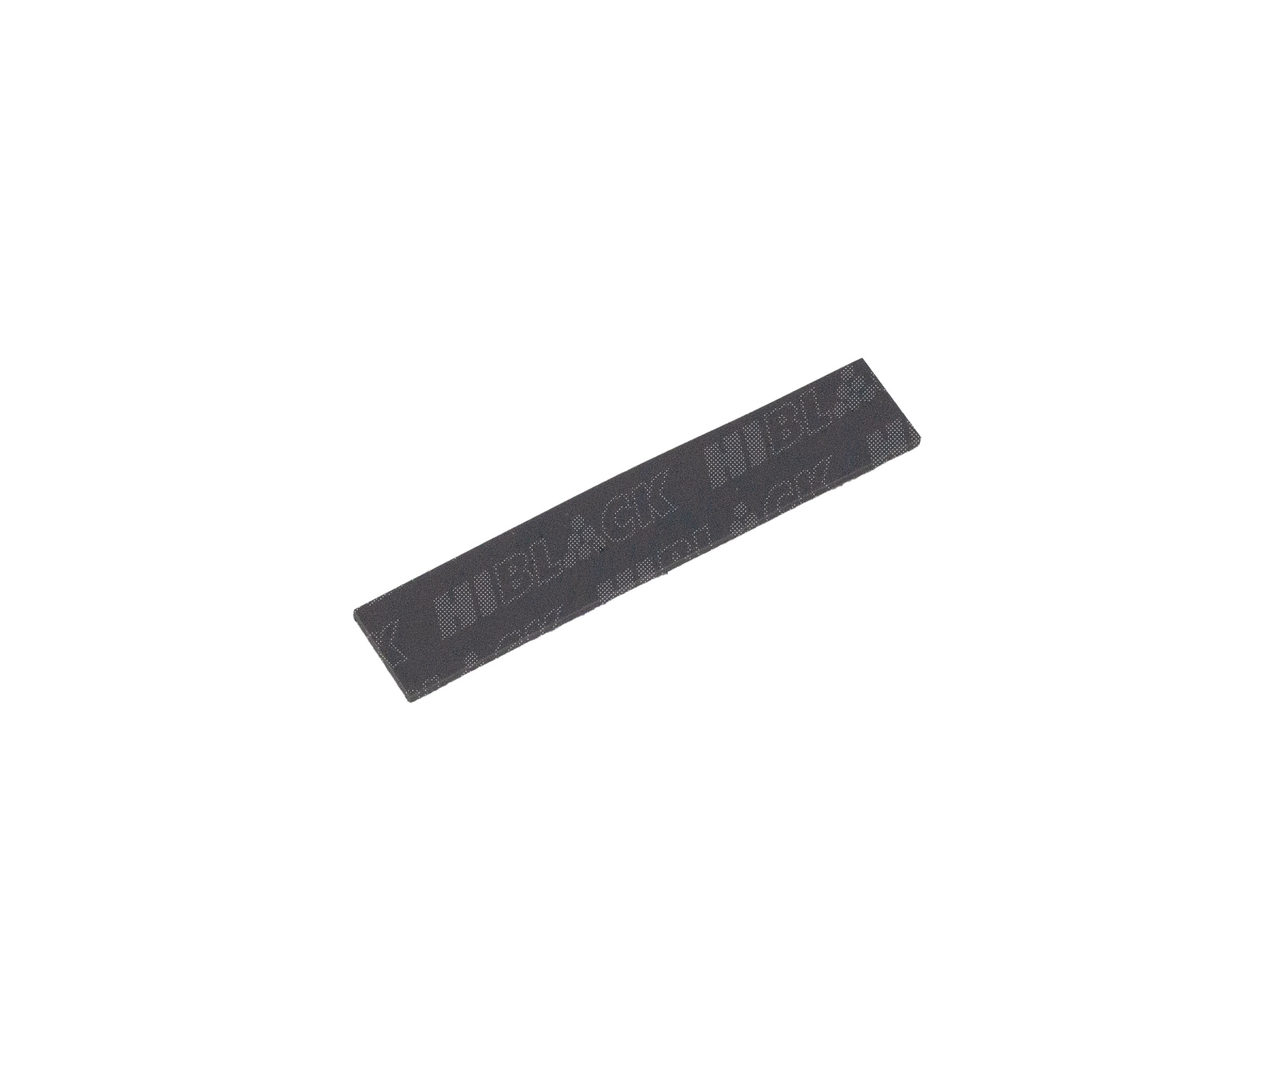 Тормозная площадка (резиновая накладка) Hi-Black дляSamsung ML1510/1710/2250/SCX4200